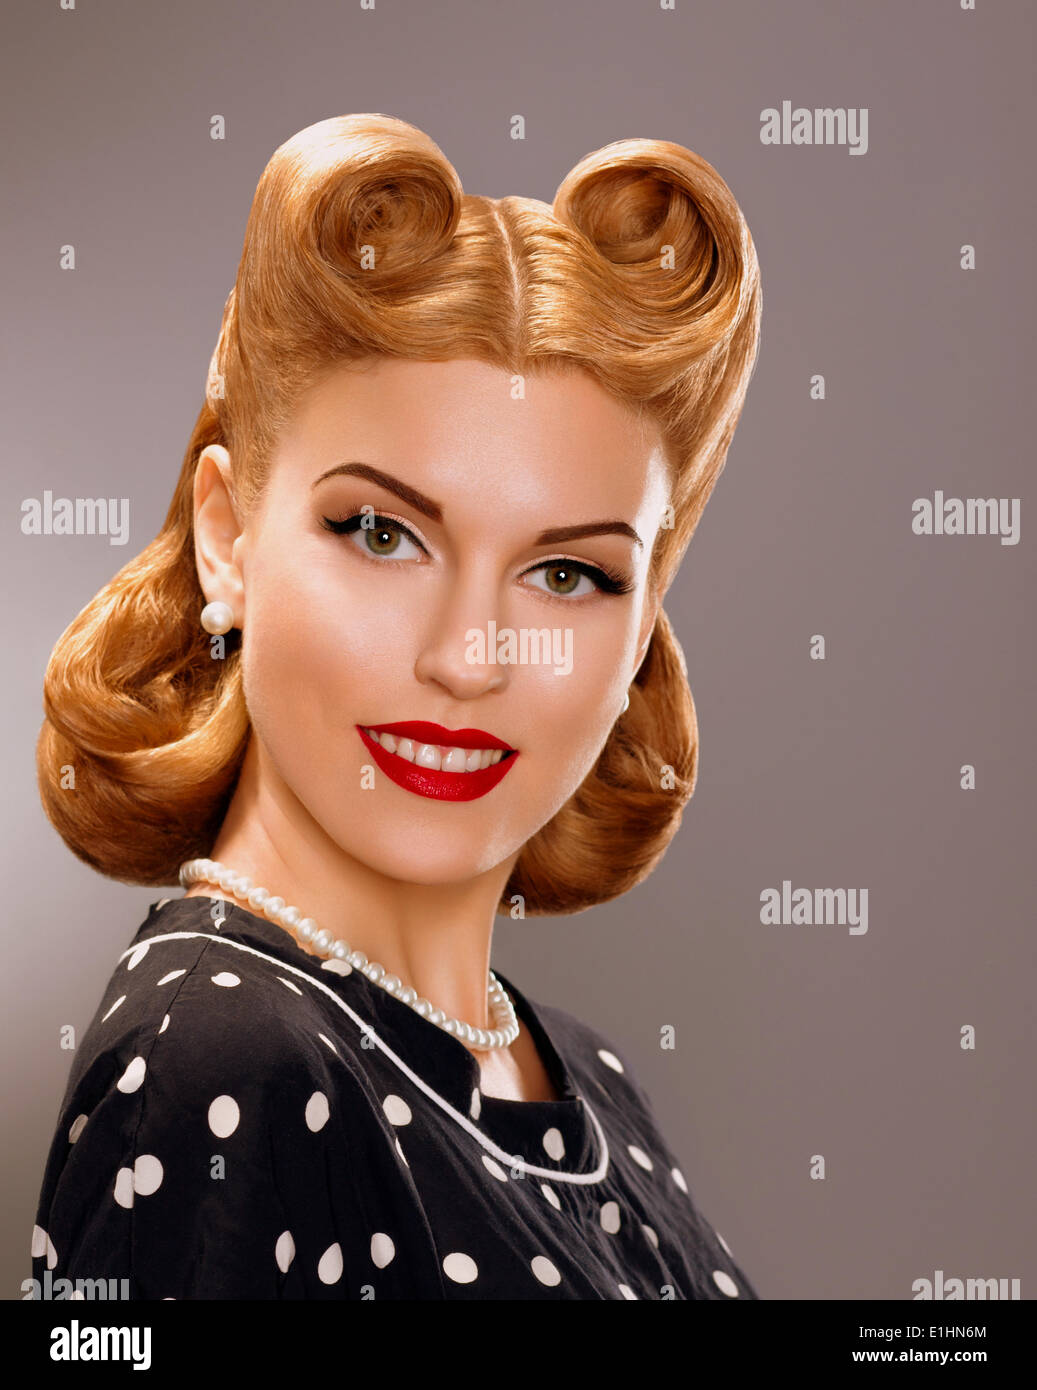 Nostalgia. Styled Smiling Woman with Retro Golden Hair Style. Nobility Stock Photo